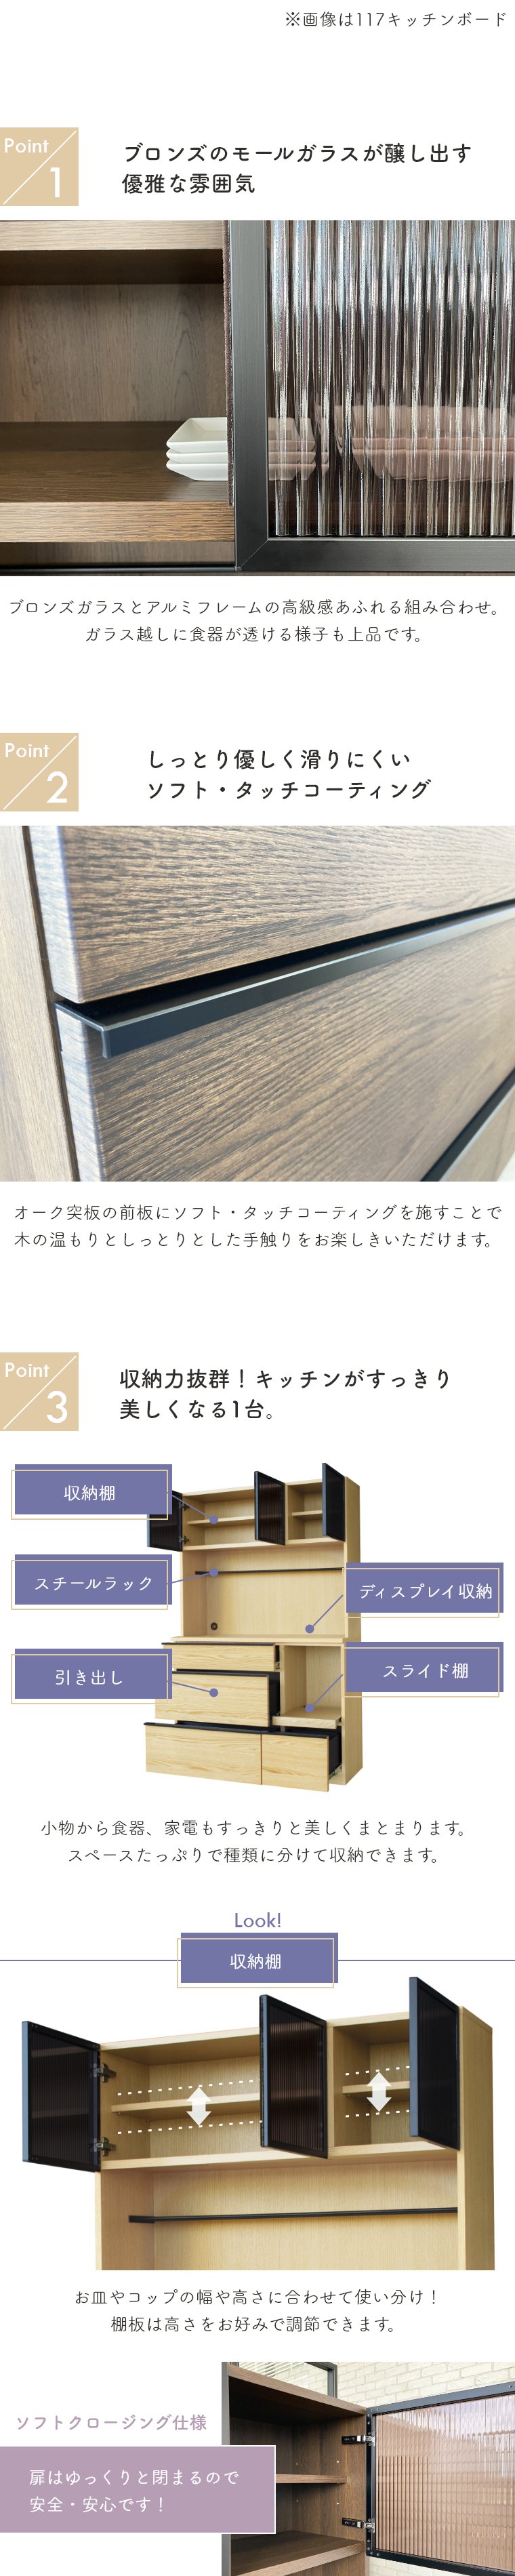 キッチンボード BALD バルド ガルト 日本製 国産 木製 シンプル 大容量 引き出し ガラス